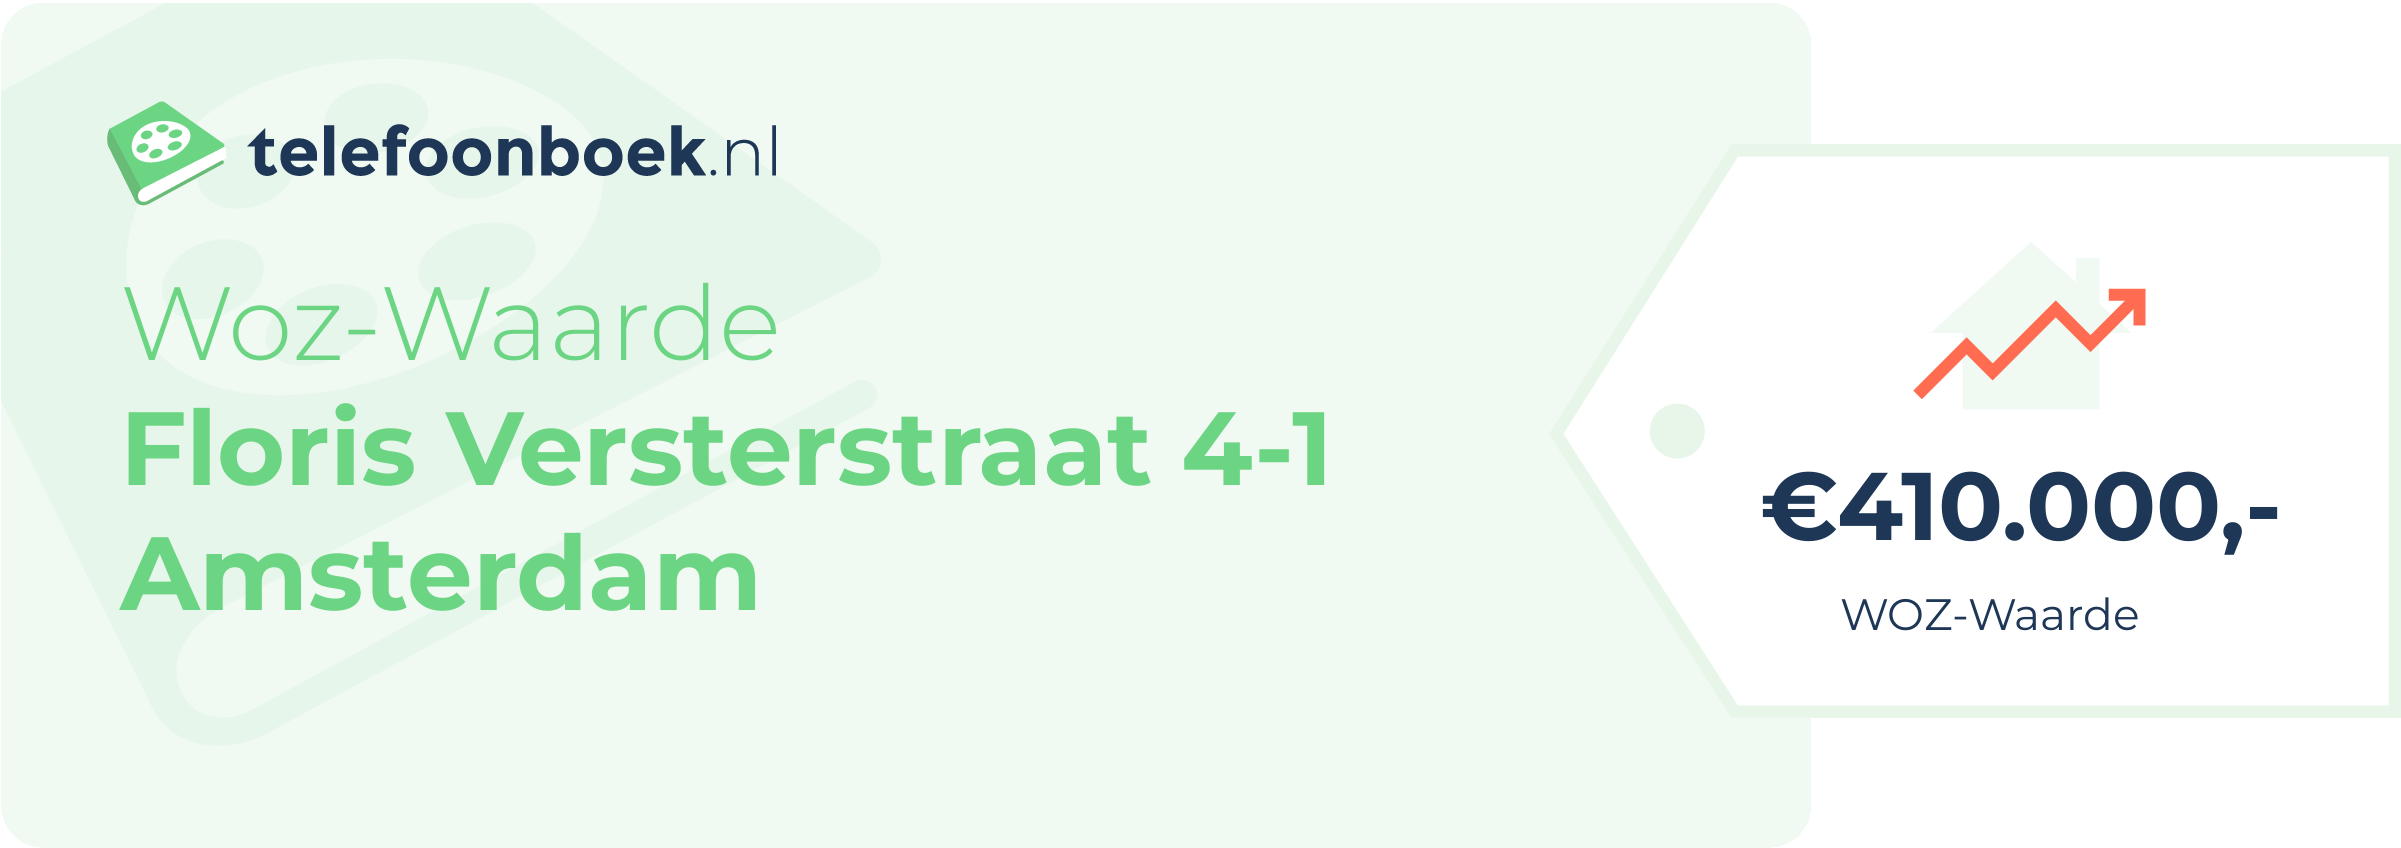 WOZ-waarde Floris Versterstraat 4-1 Amsterdam